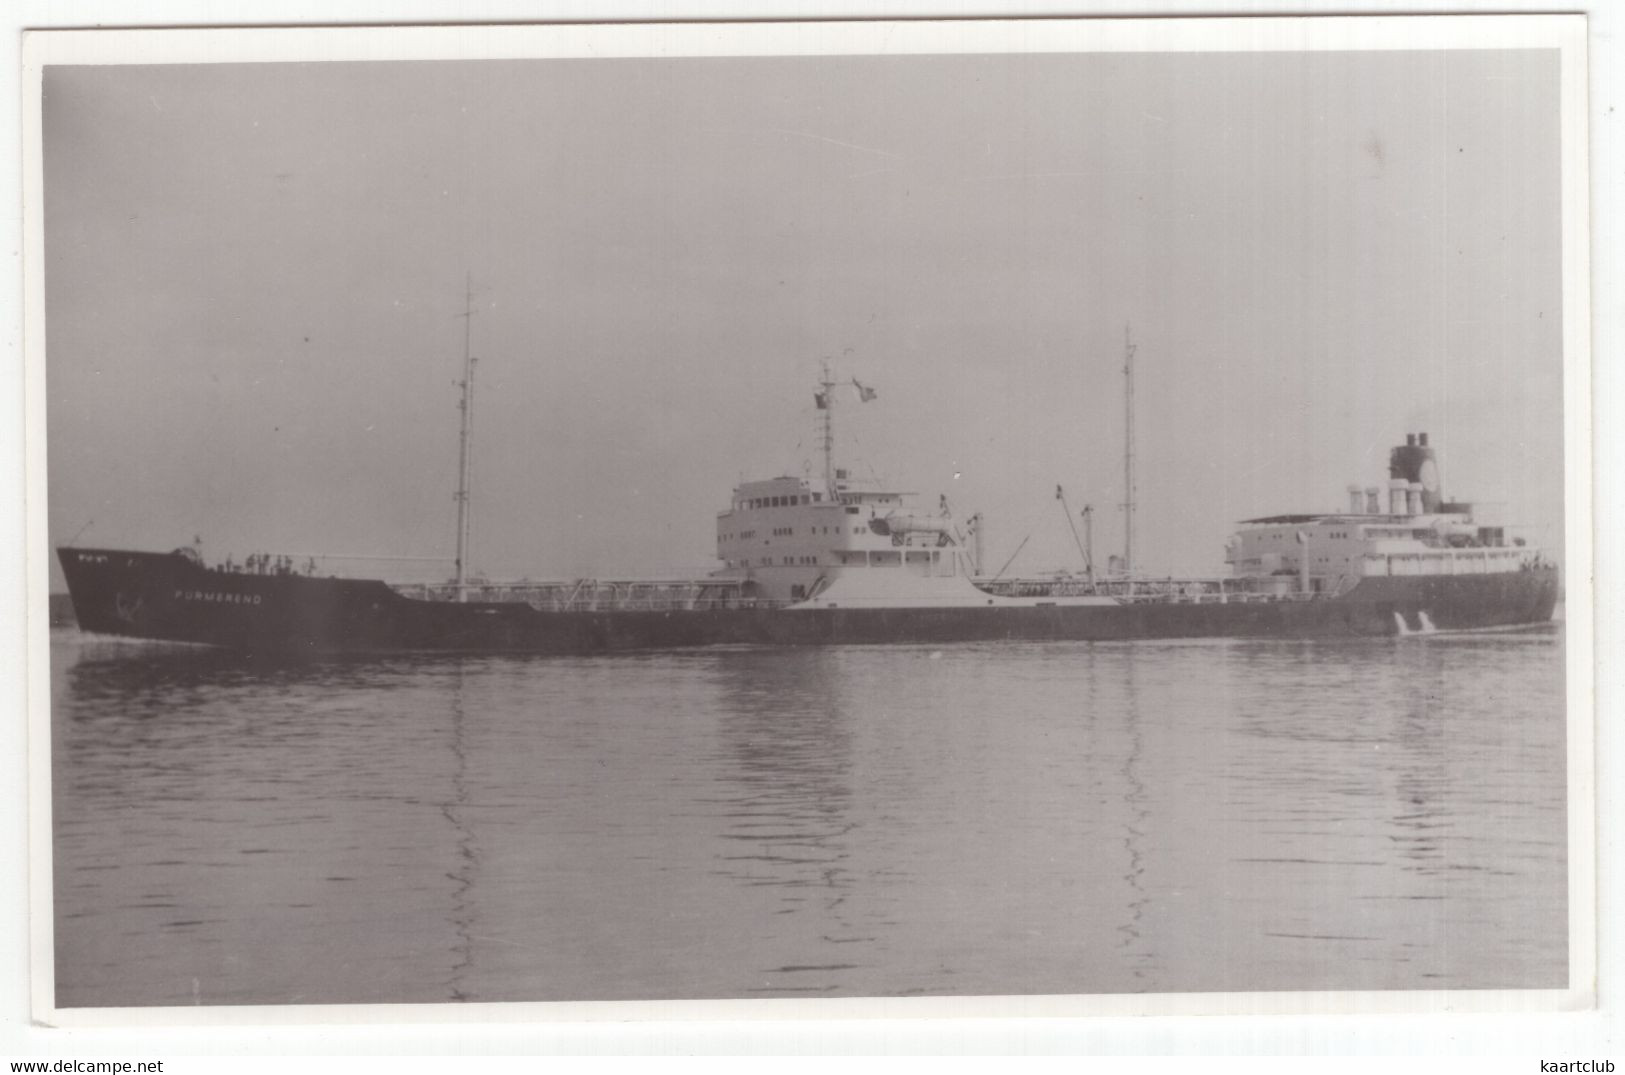 MS 'PURMEREND' - 1957 - Cargo Vessel - Bateaux